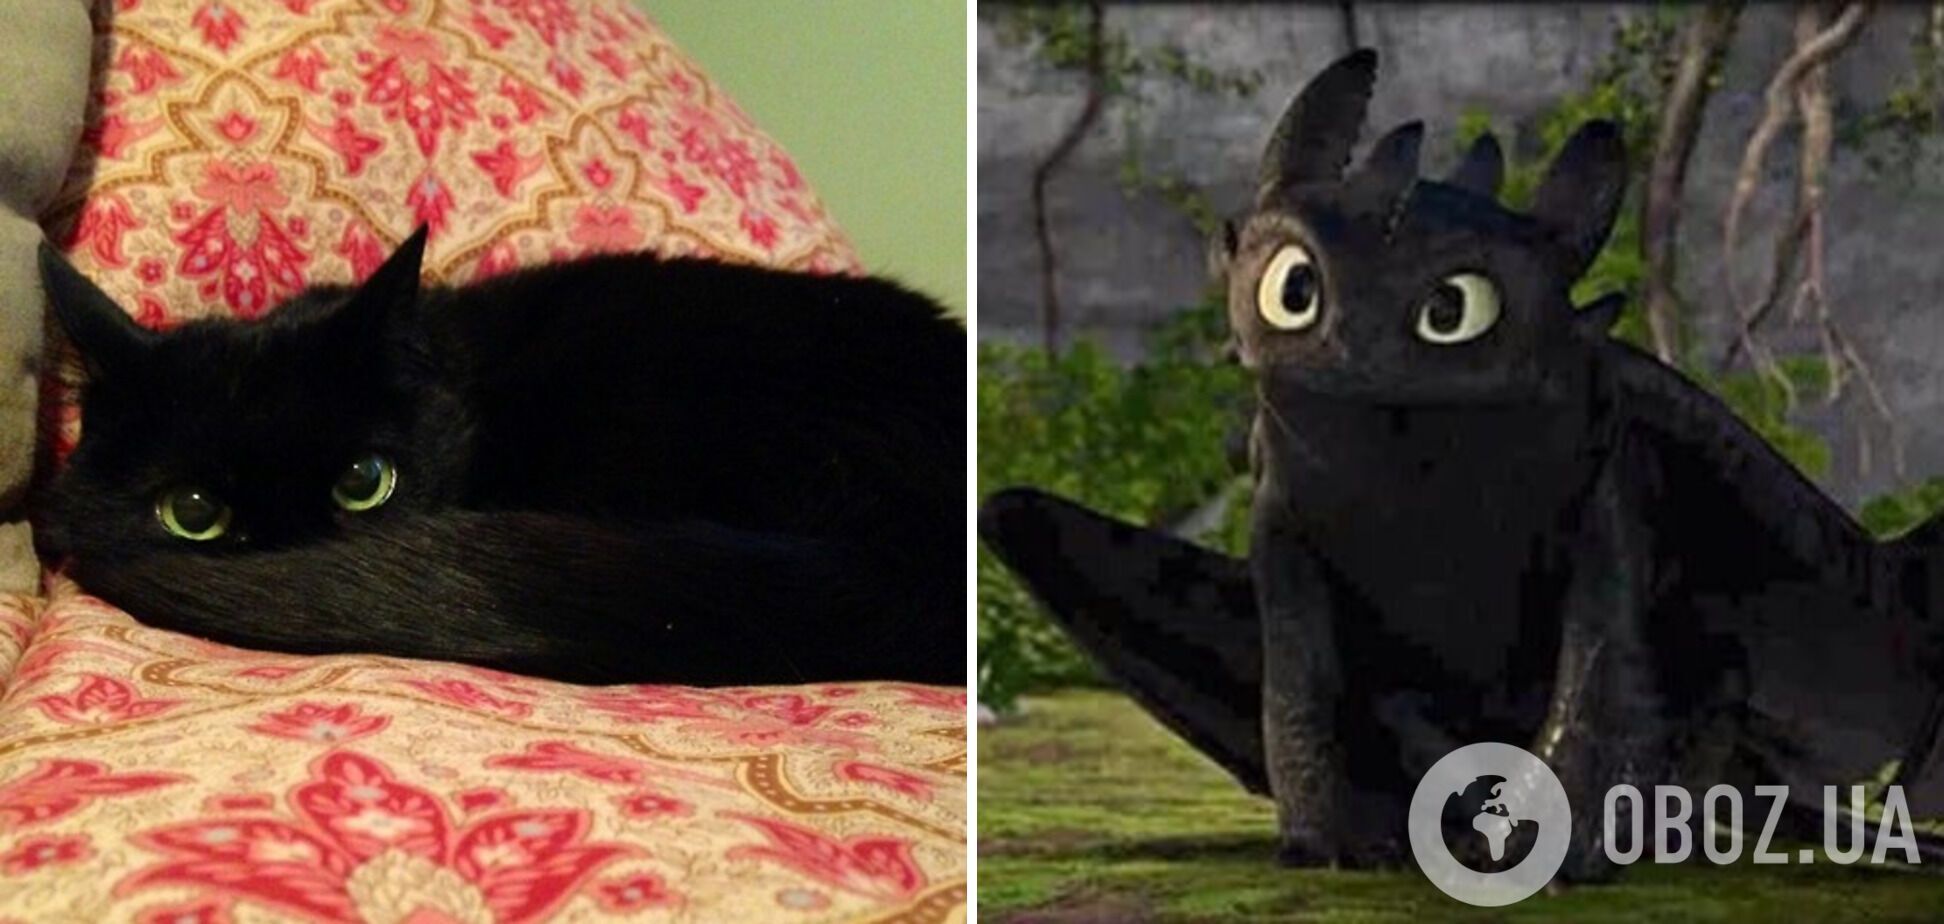 Милейший котик похож на Беззубика из мультфильма "Как приручить дракона?"